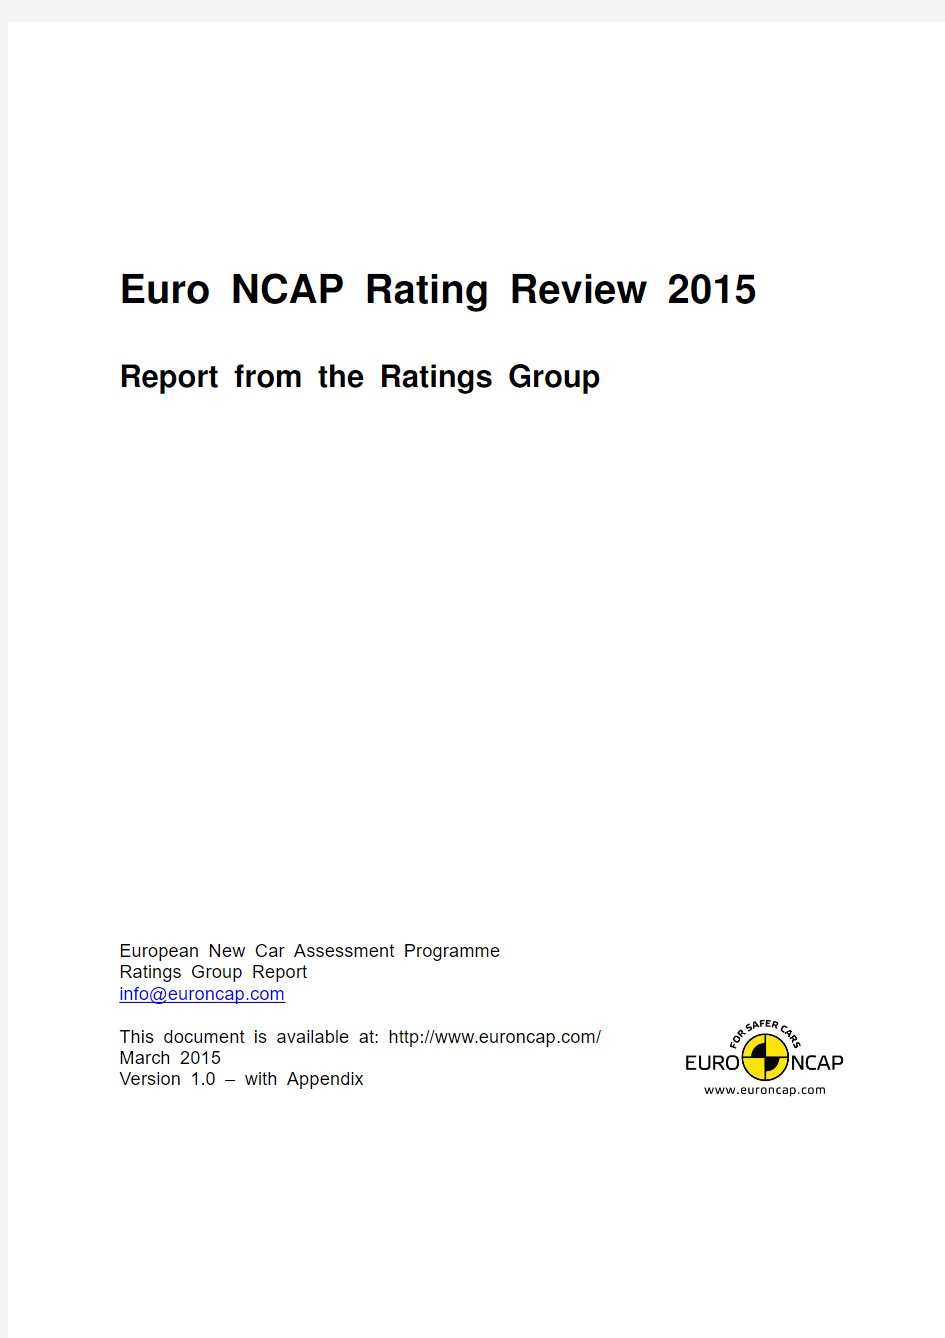 欧洲NCAP评分标准